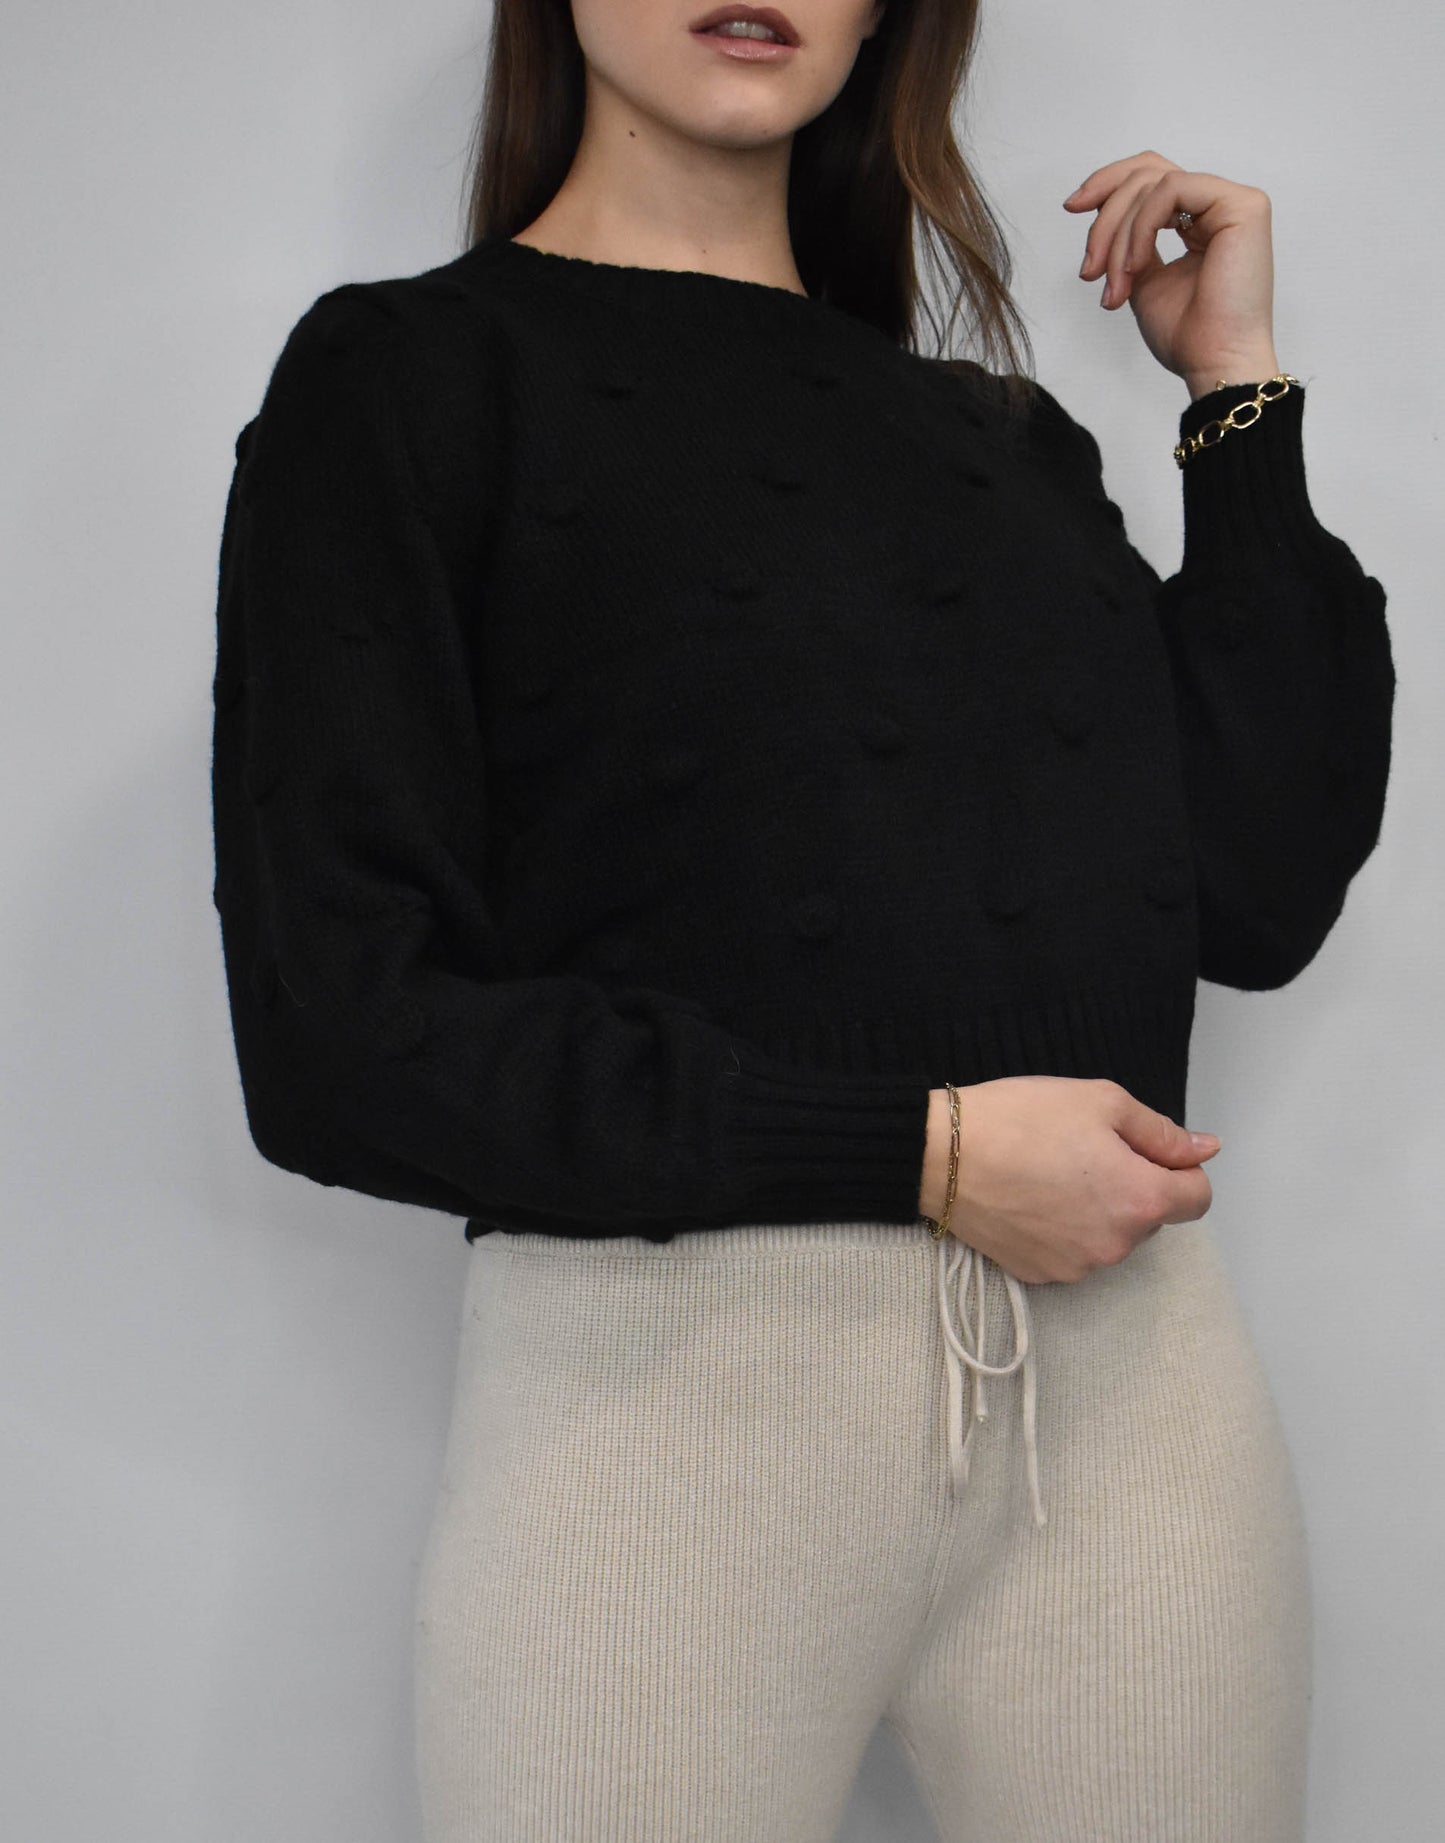 Hoch geschlossener kurzer Pullover mit Wollpunkten in schwarz